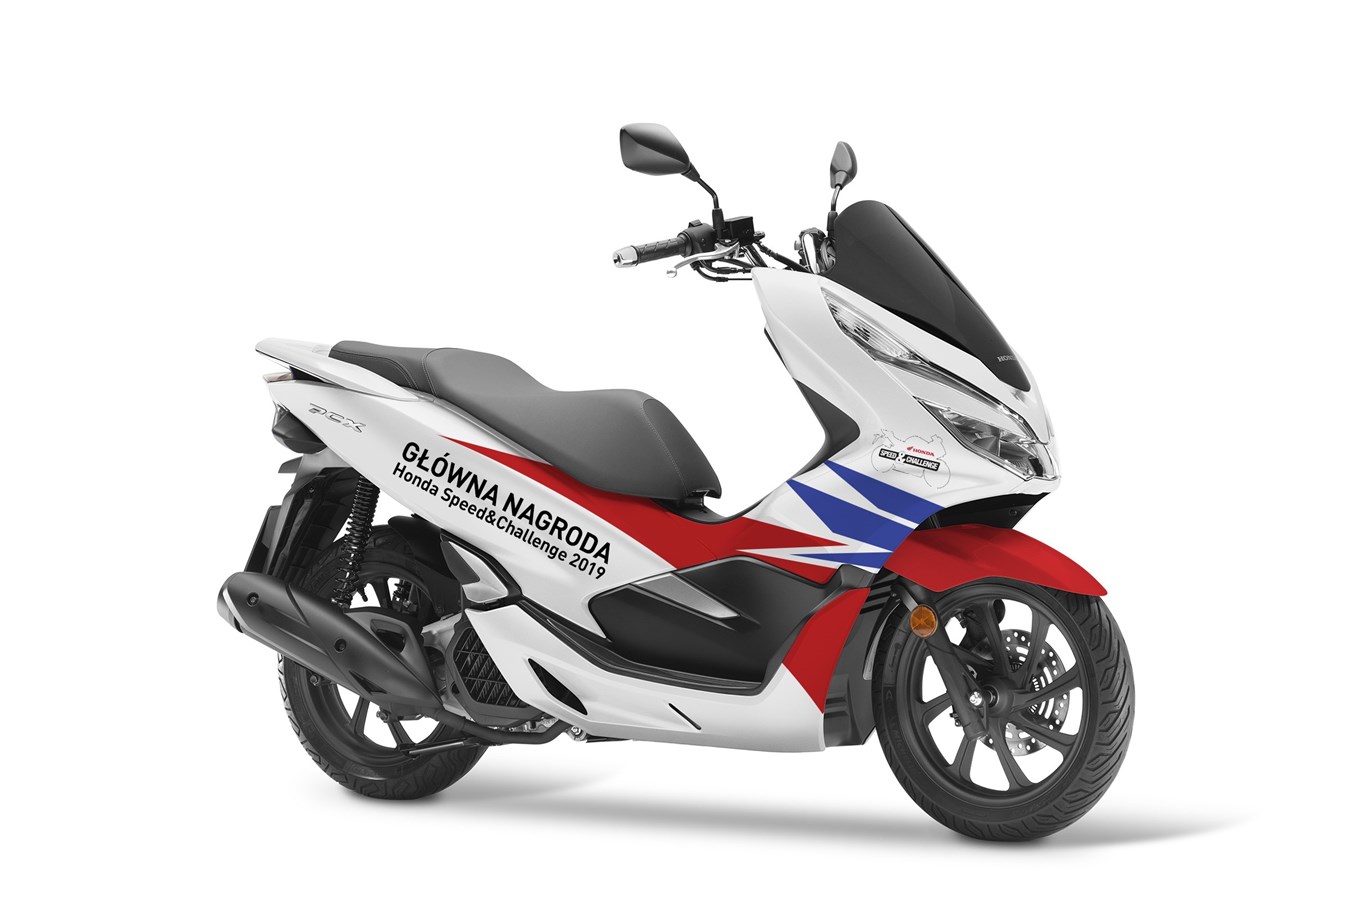 Honda PCX 125 Motocykle, Skutery, Motorowery, Opinie